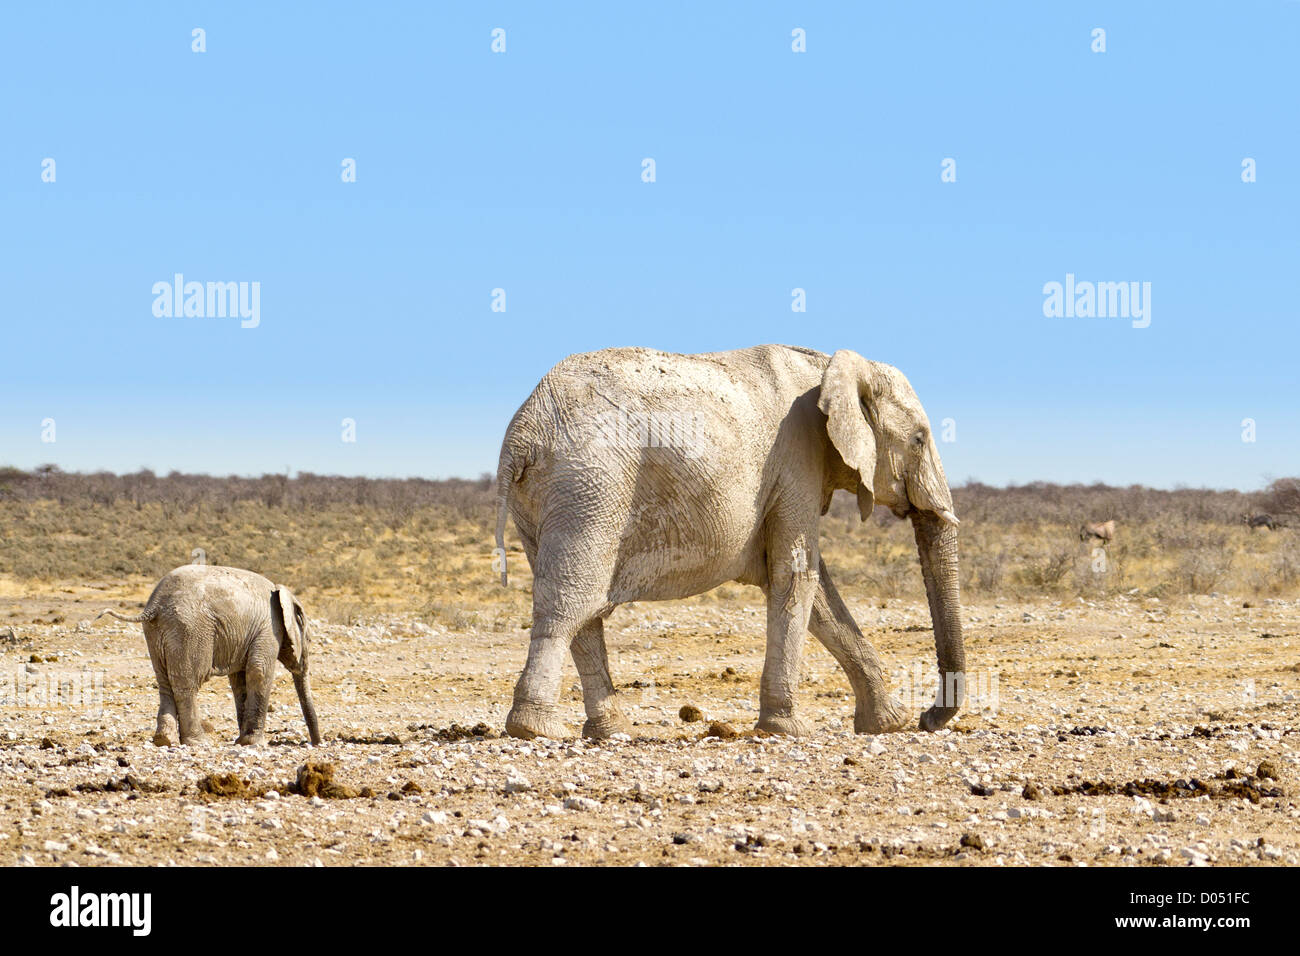 Walking elephant with baby elephant Stock Photo